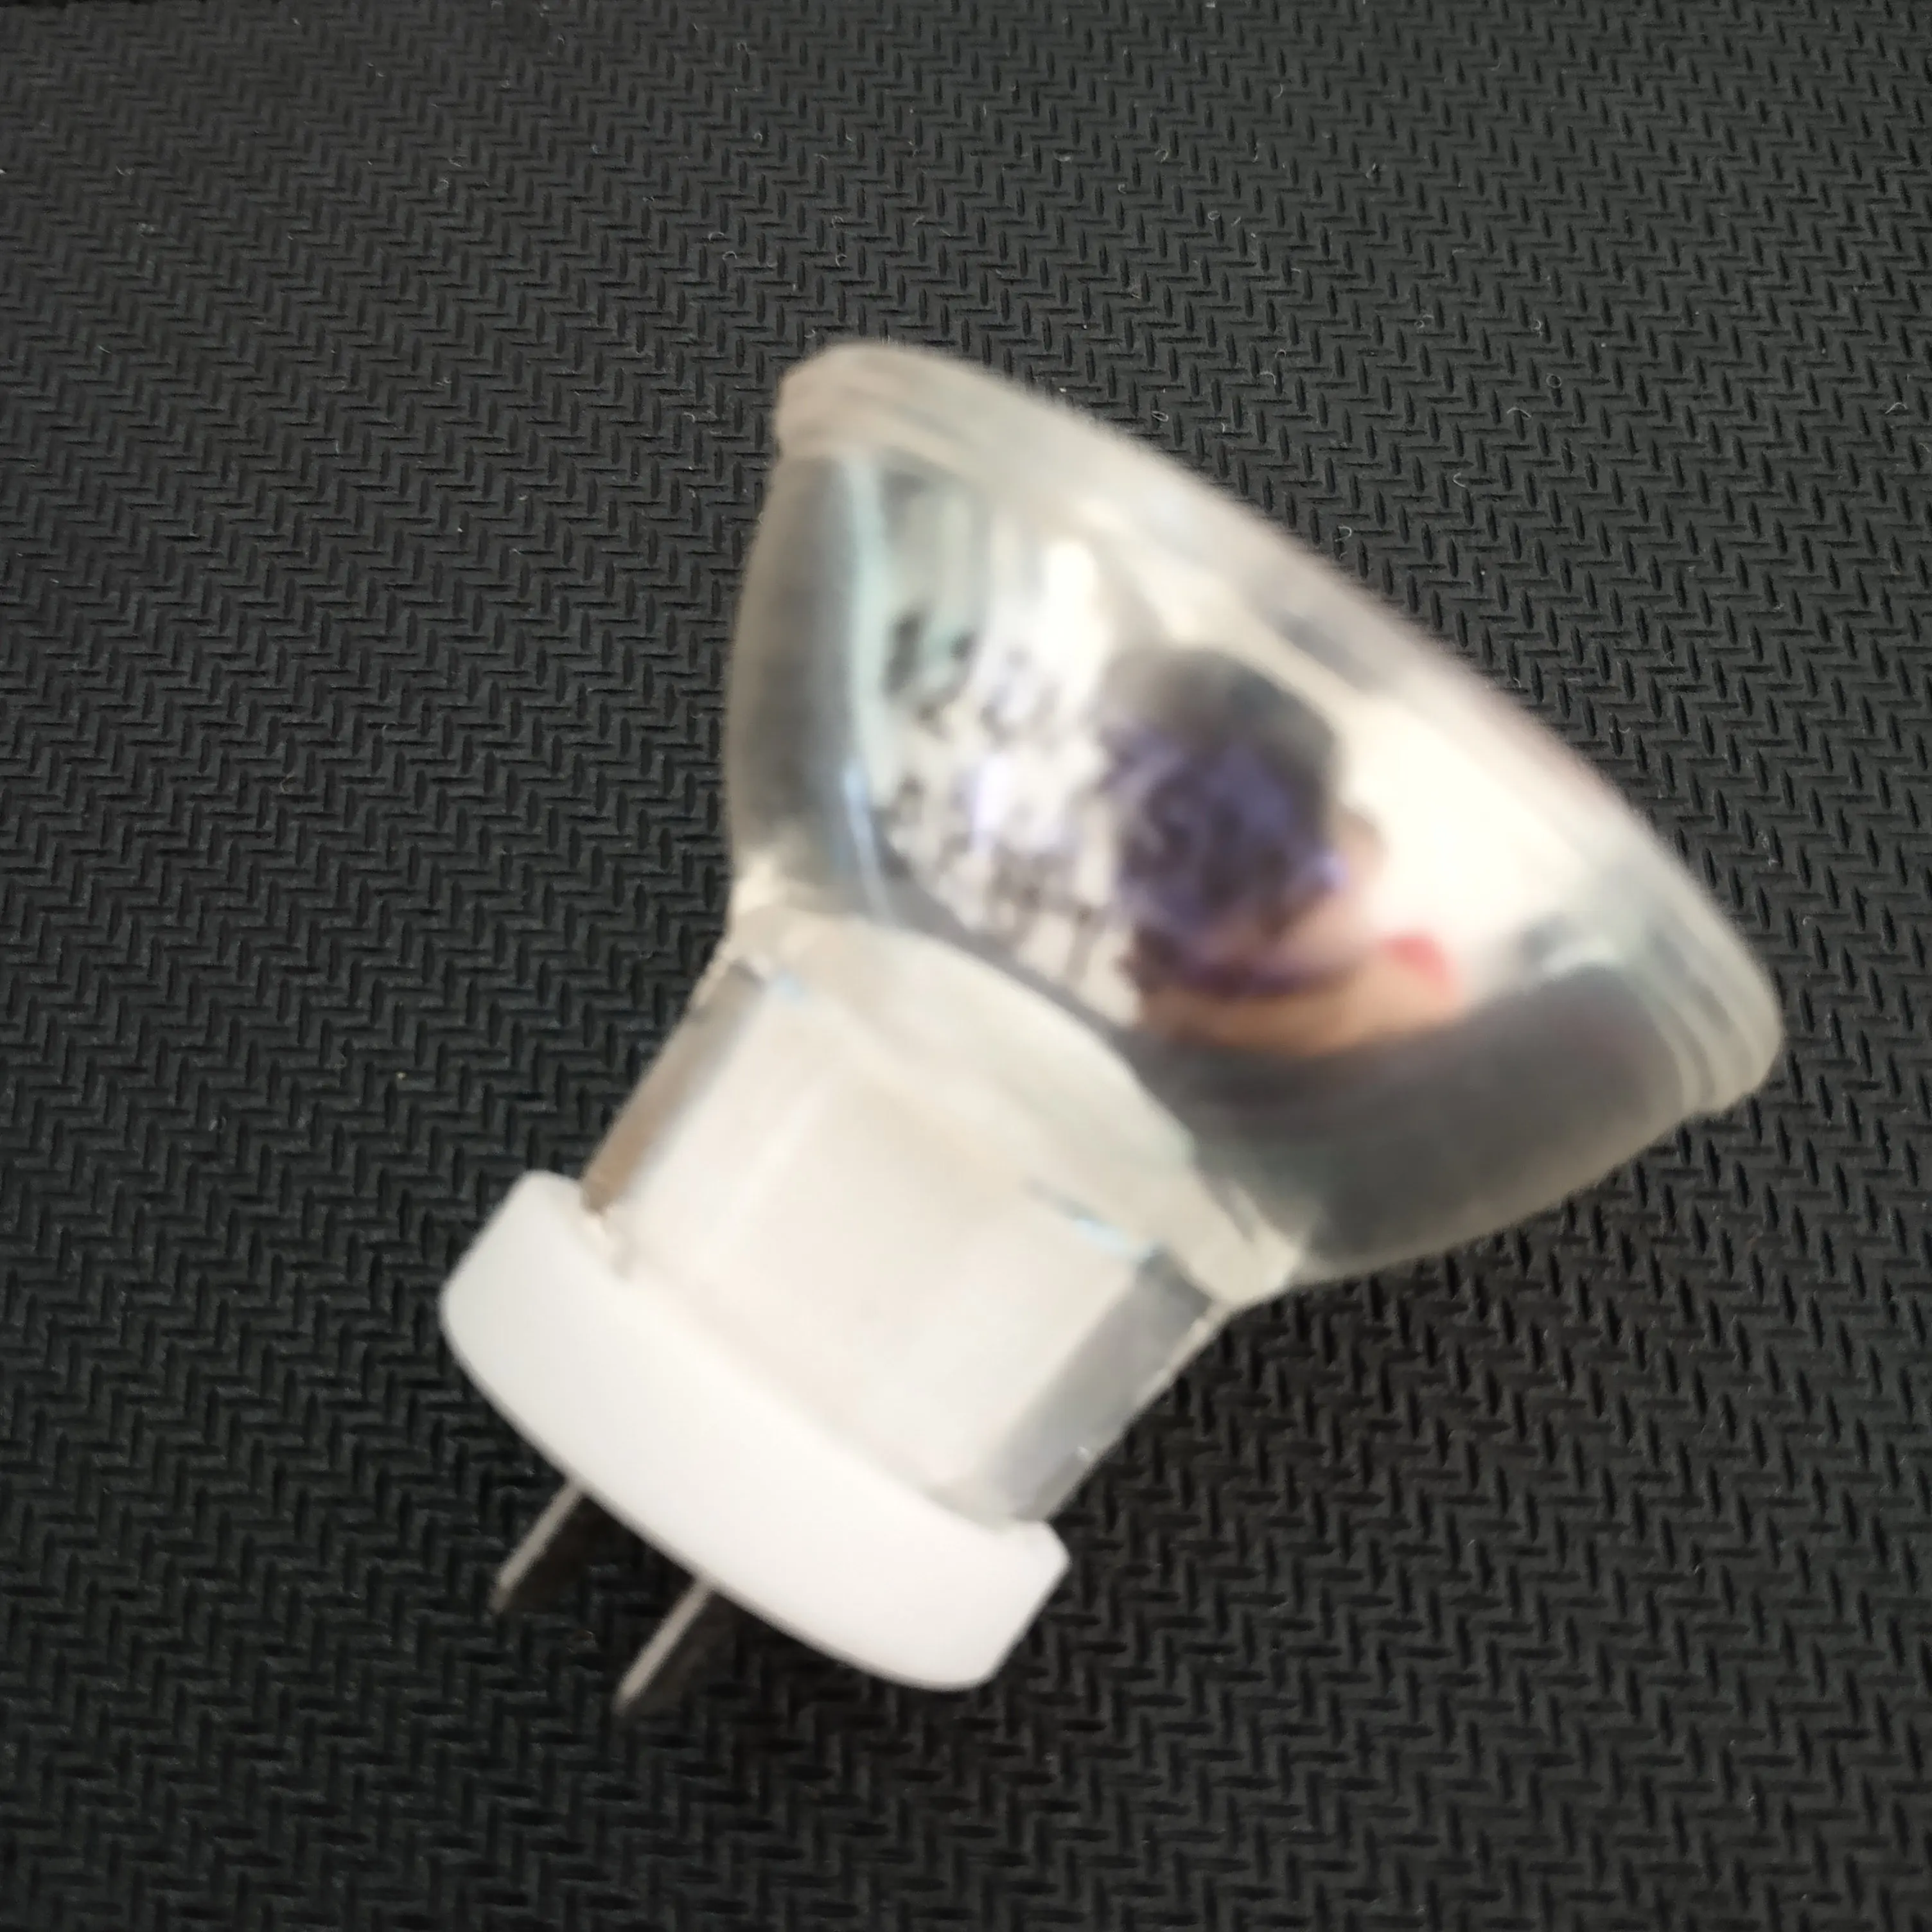 

12V 75W JCR 12V75W MR11 medical halogen light bulb Heraeus dental curing lights lamp